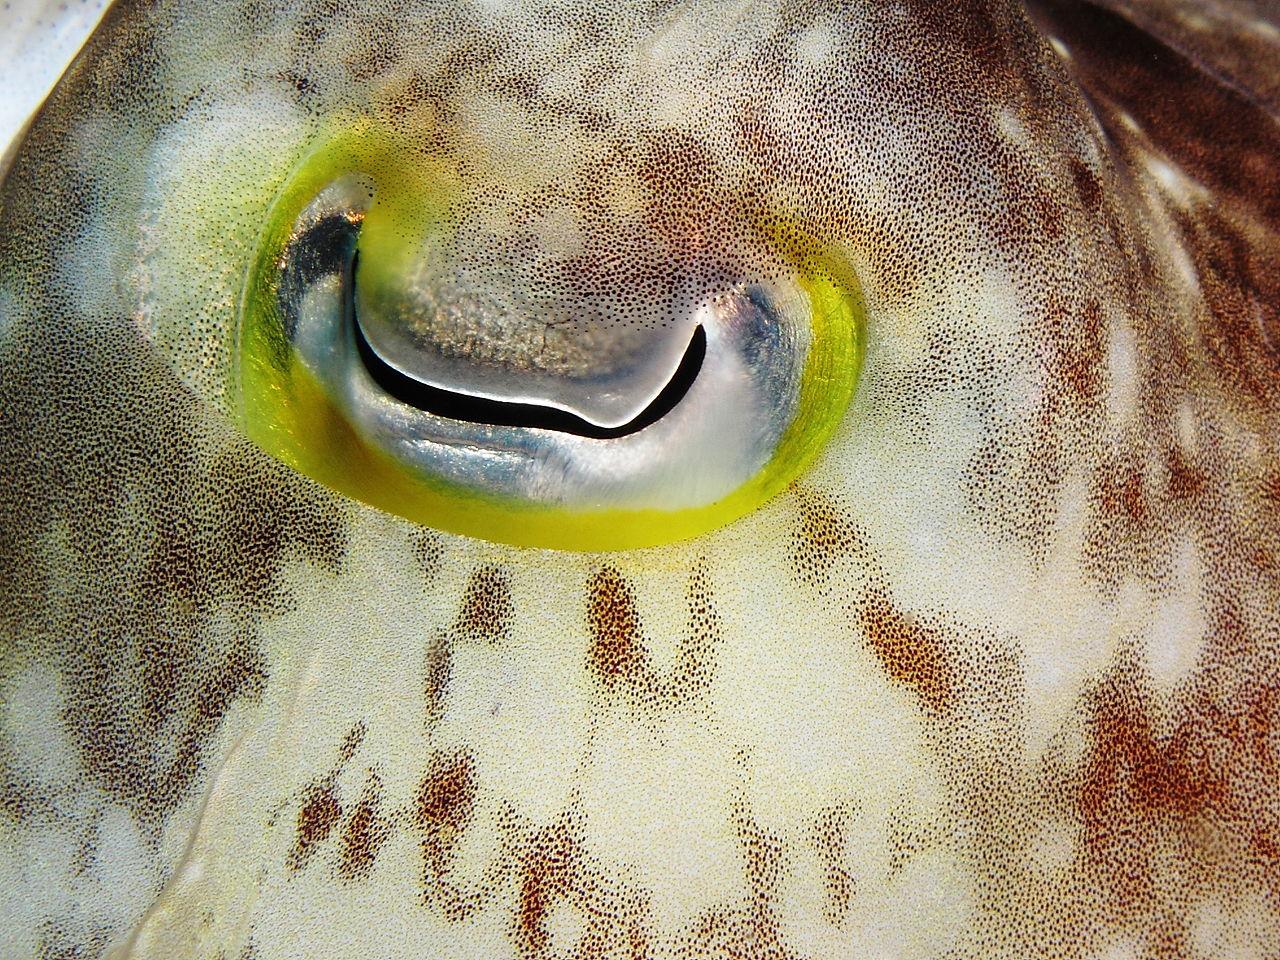 Eye of cuttlefish